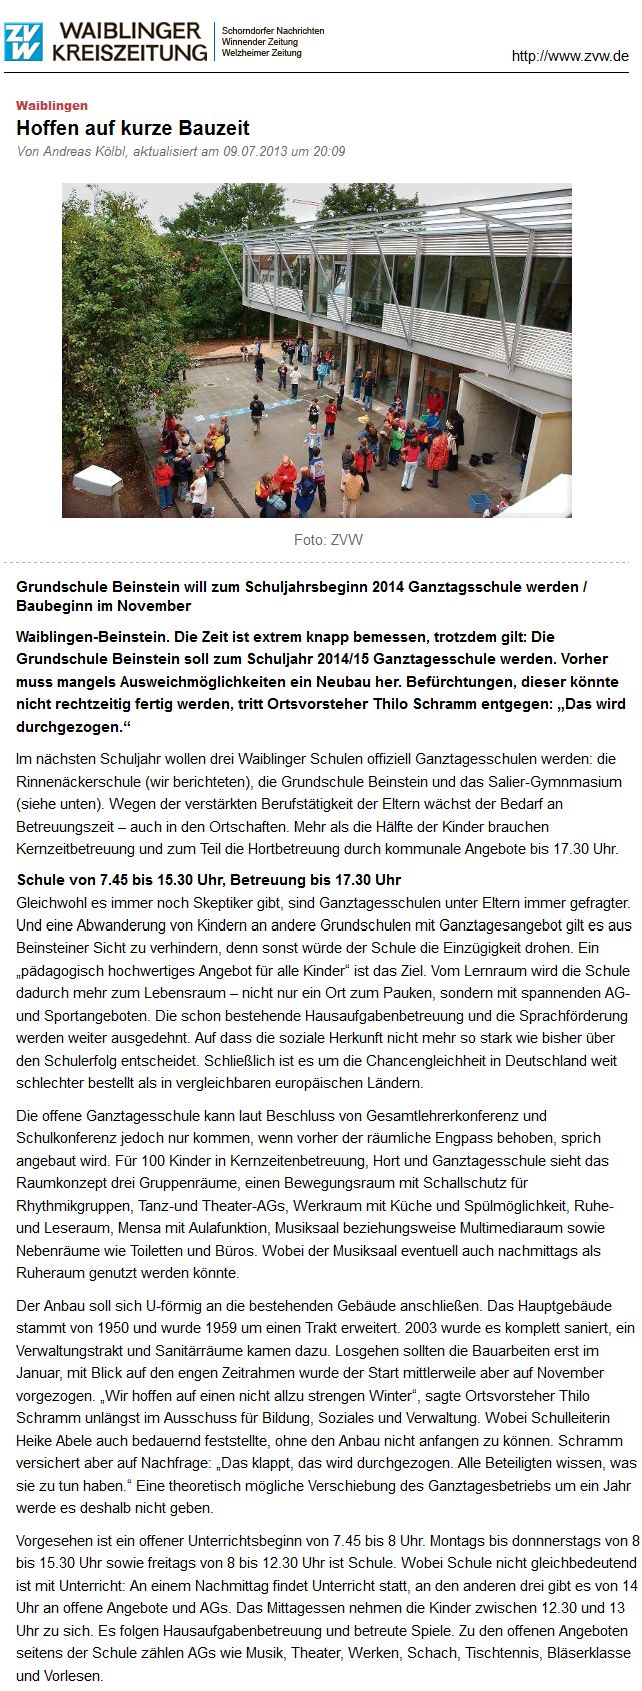 Waiblinger Kreiszeitung vom 10. Juli 2013